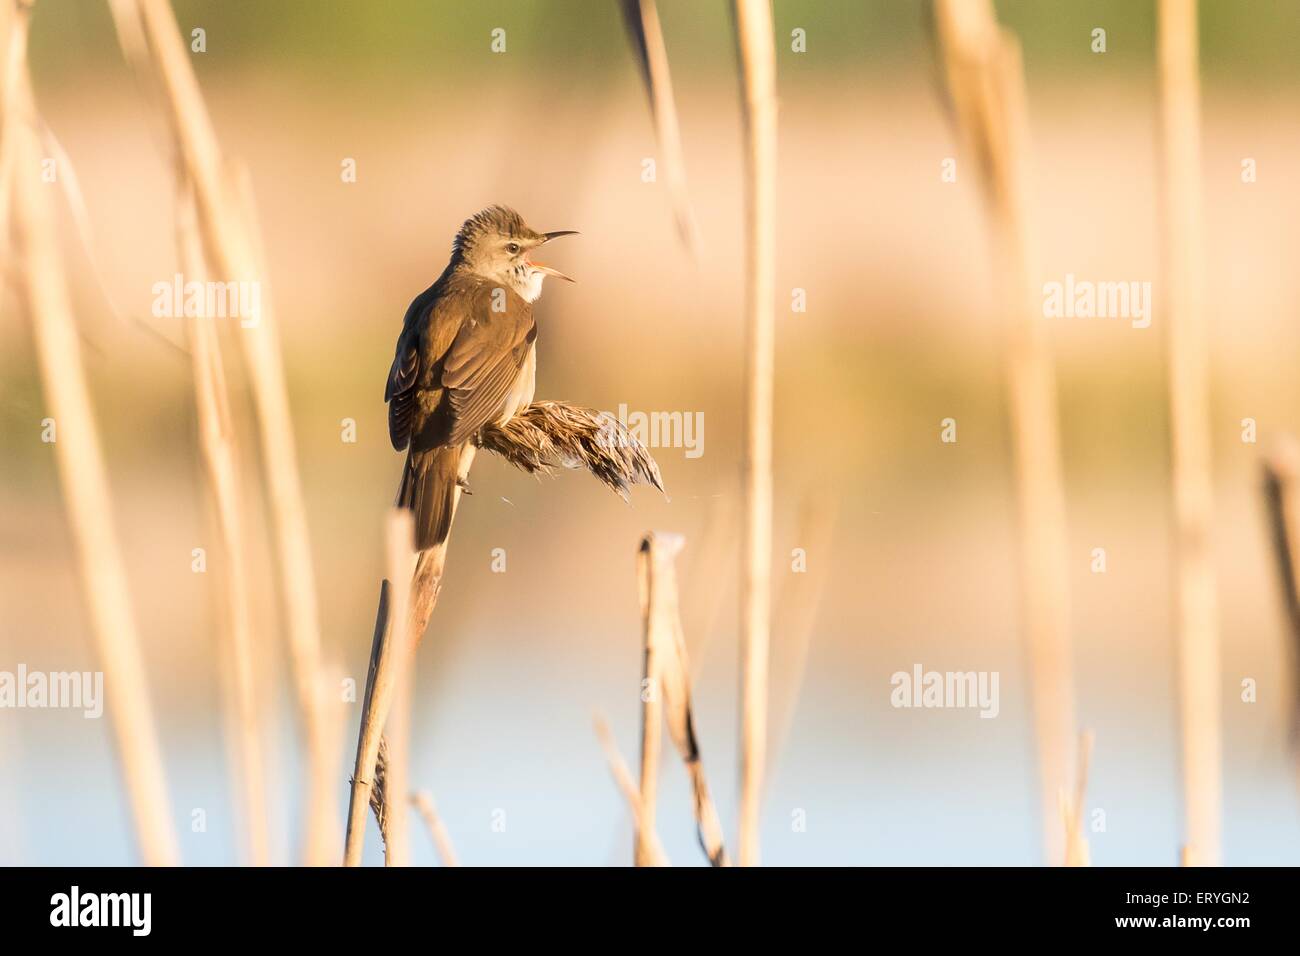 Grand reed warbler (Acrocephalus arundinaceus) dans des roseaux, la Mazurie, Pologne Banque D'Images